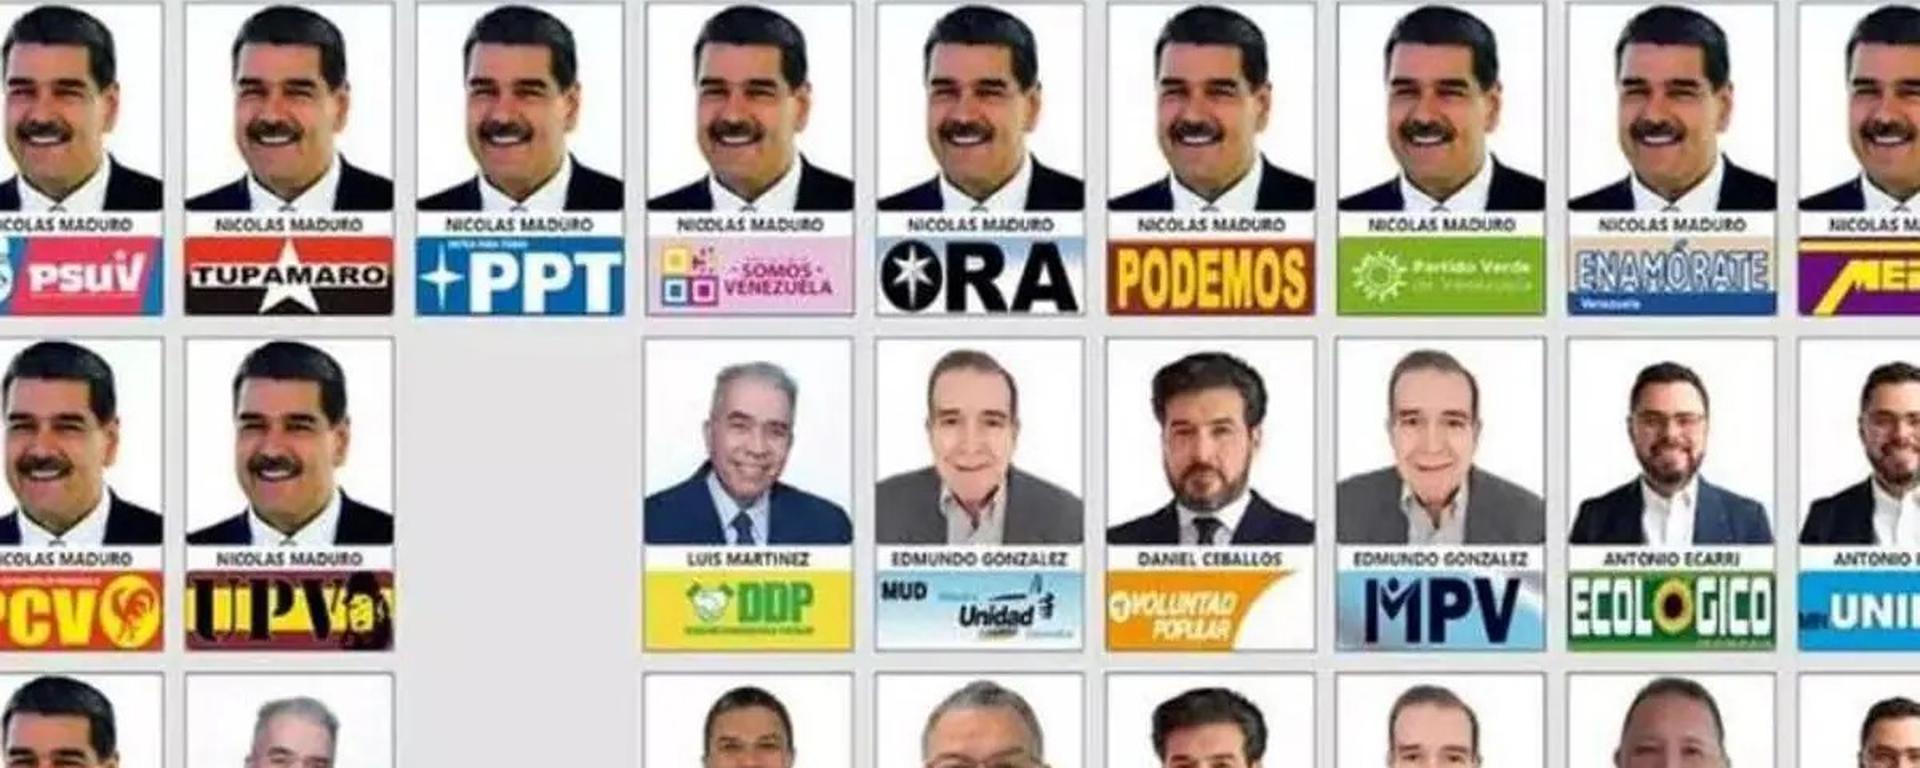 Un tarjetón electoral a la medida de Maduro: 13 veces aparece su cara en la cédula de votación